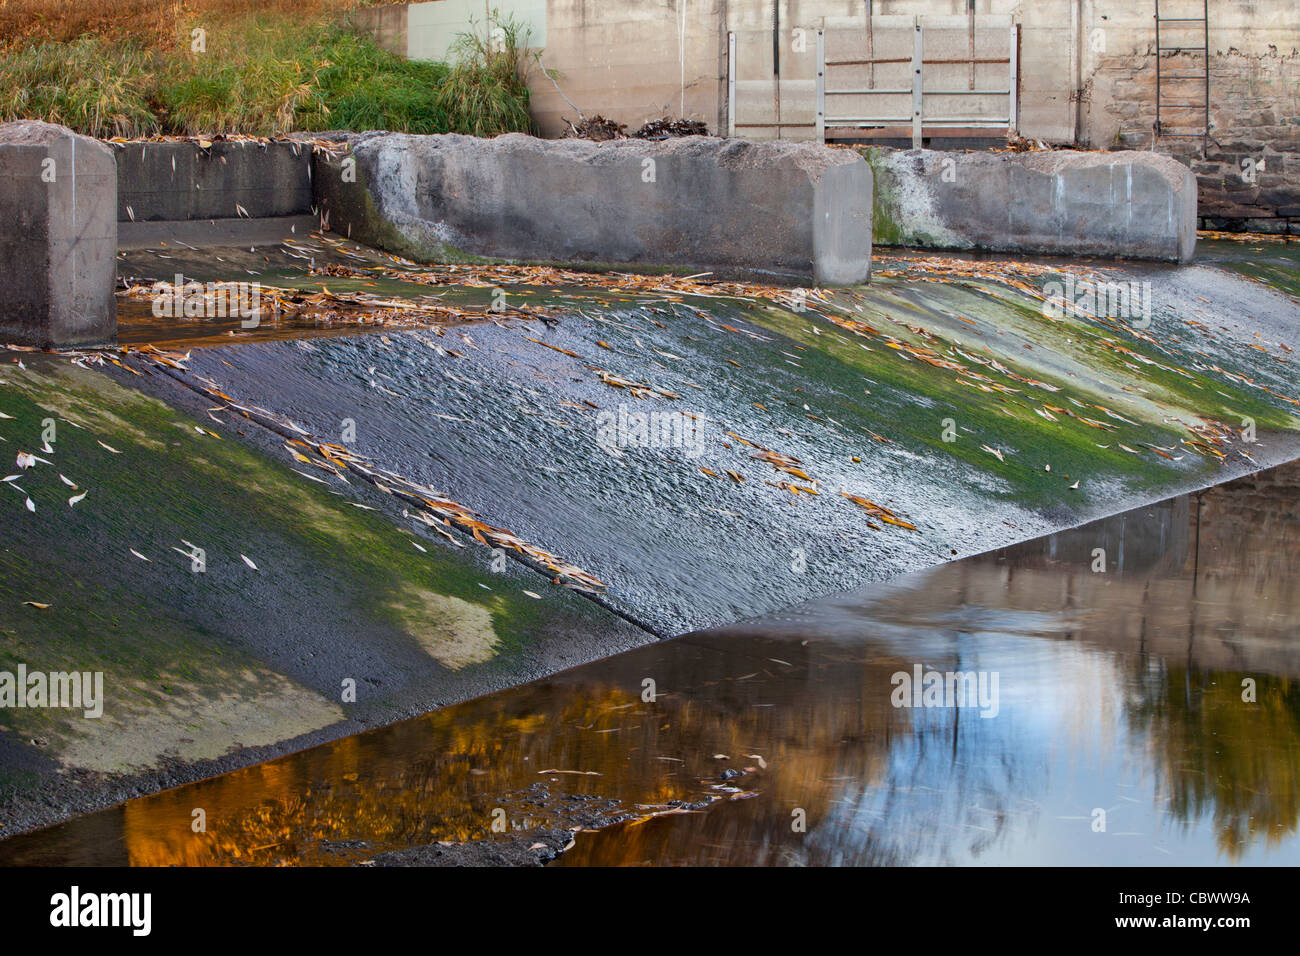 Vecchia Diga di deviazione con il Fosso di Irrigazione ingresso - Cache la Poudre River in Fort Collins, Colorado, scenario autunnale con acqua bassa Foto Stock